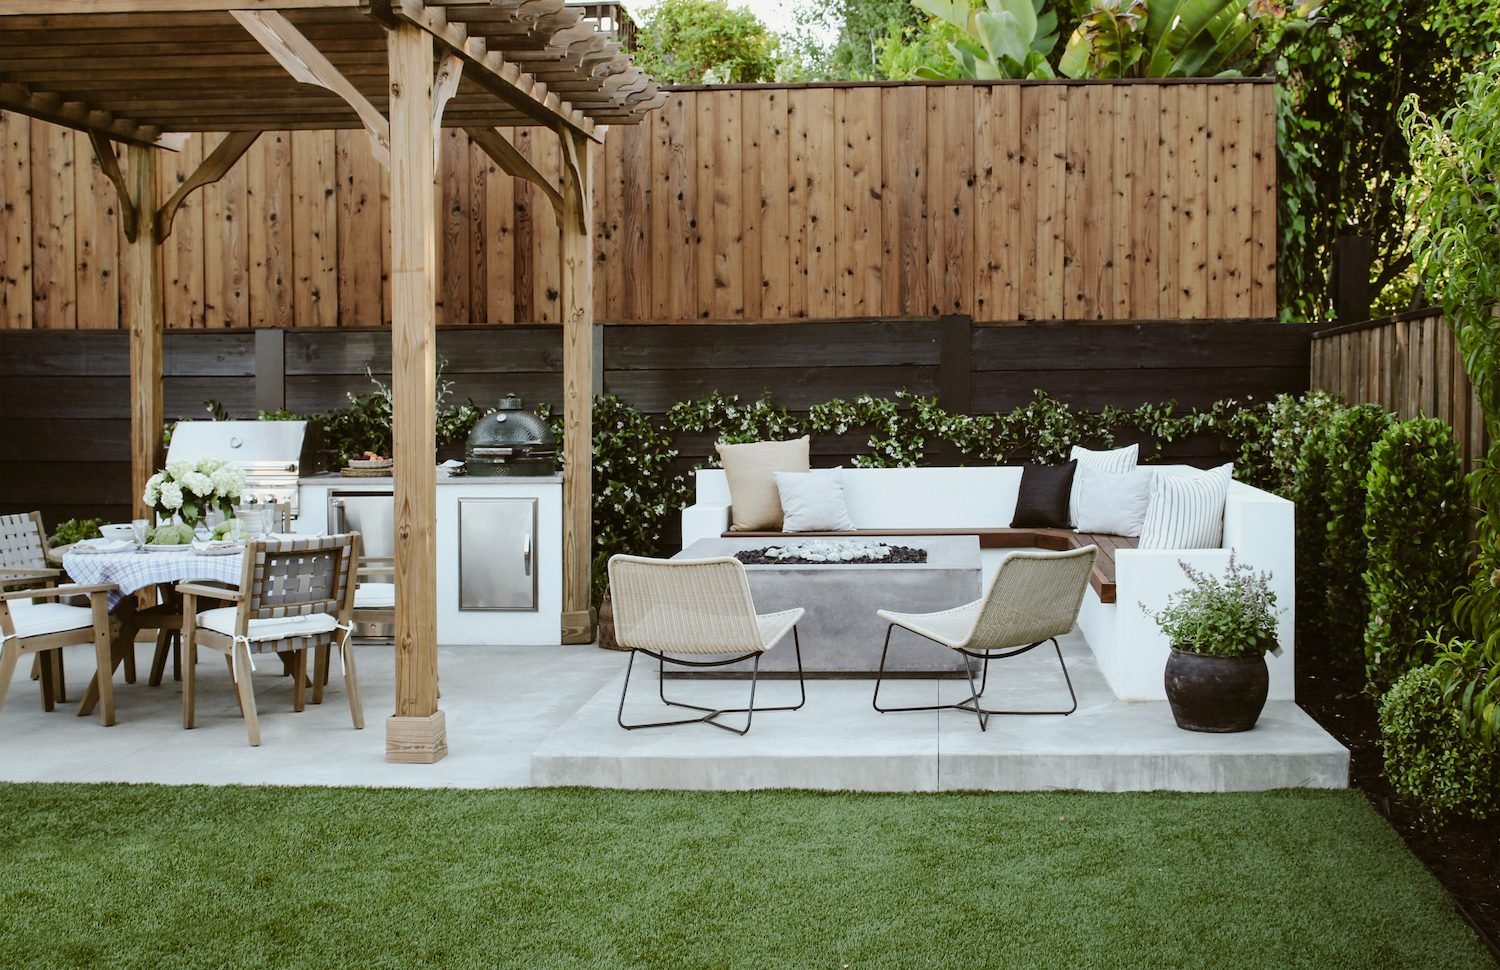 Classic outdoor patio design